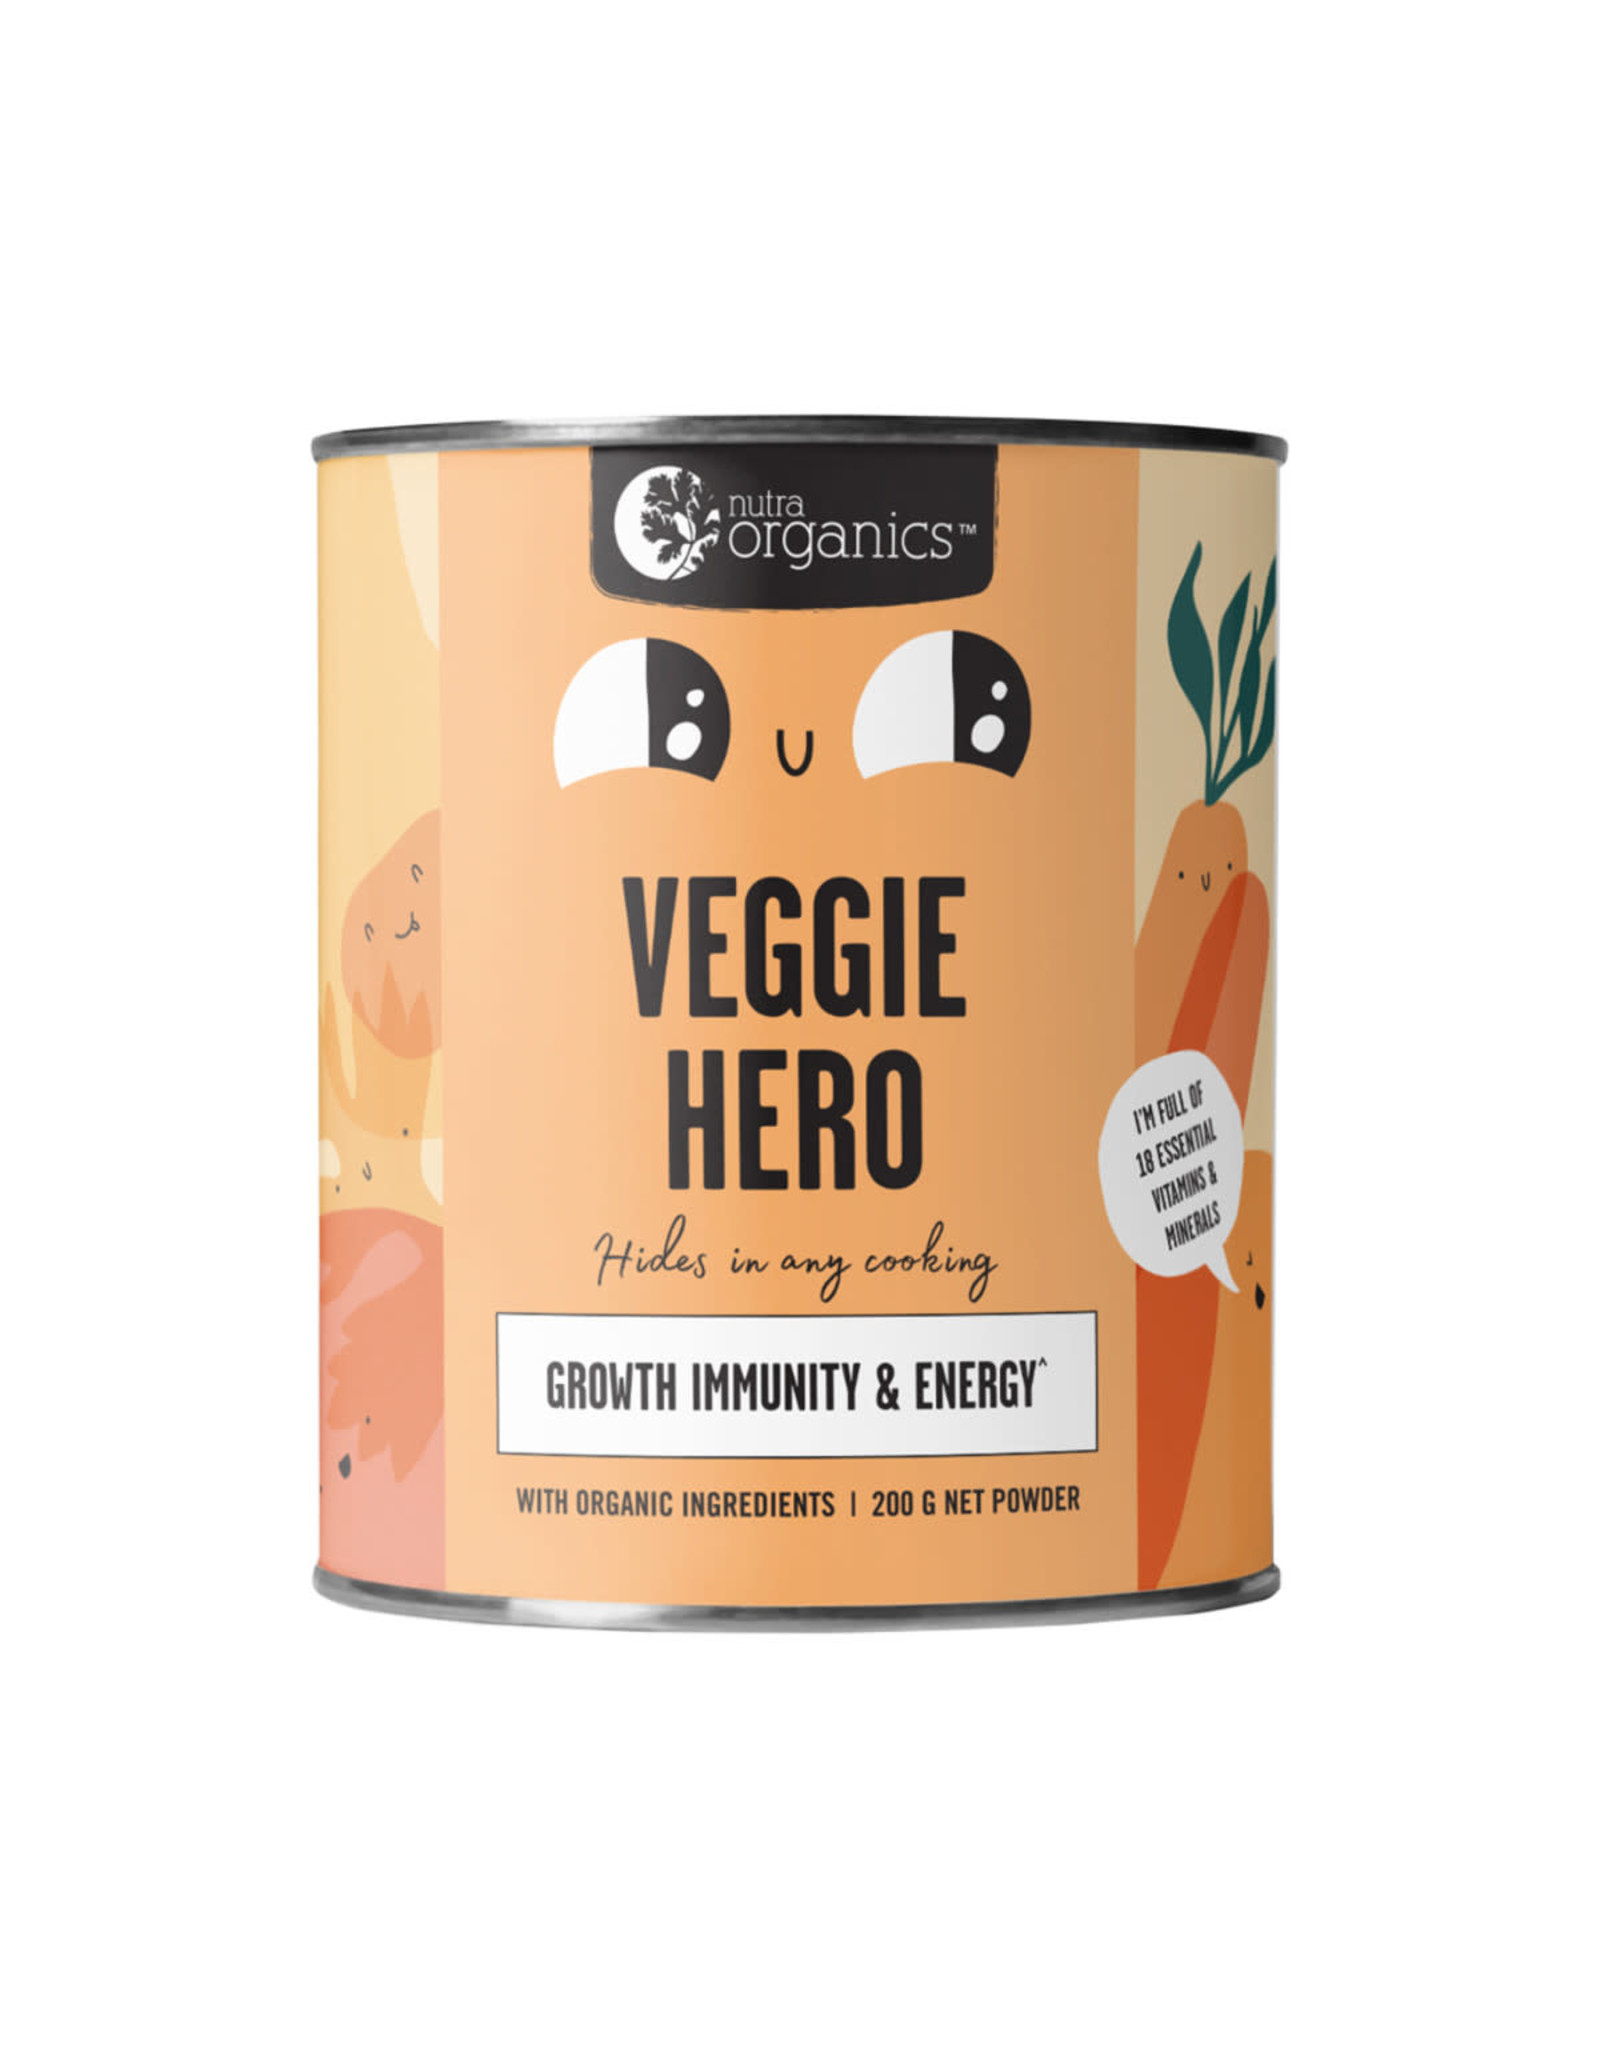 NutraOrganics Veggie Hero (Growth, Immunity & Energy) 200g